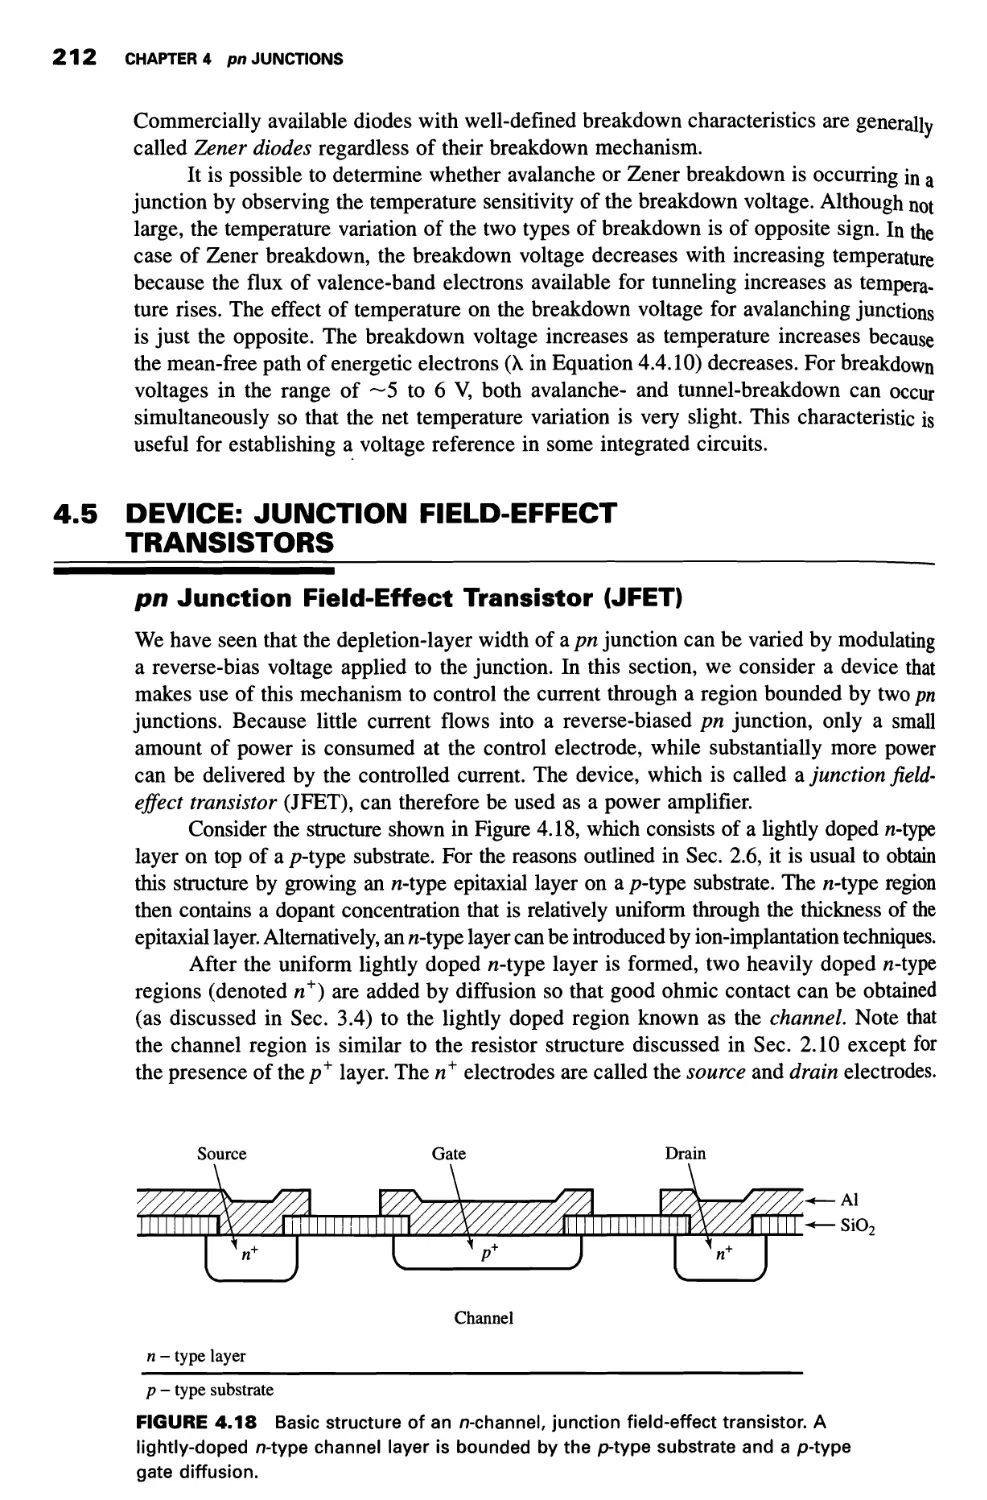 4.5 Device: Junction Field-Effect Transistors